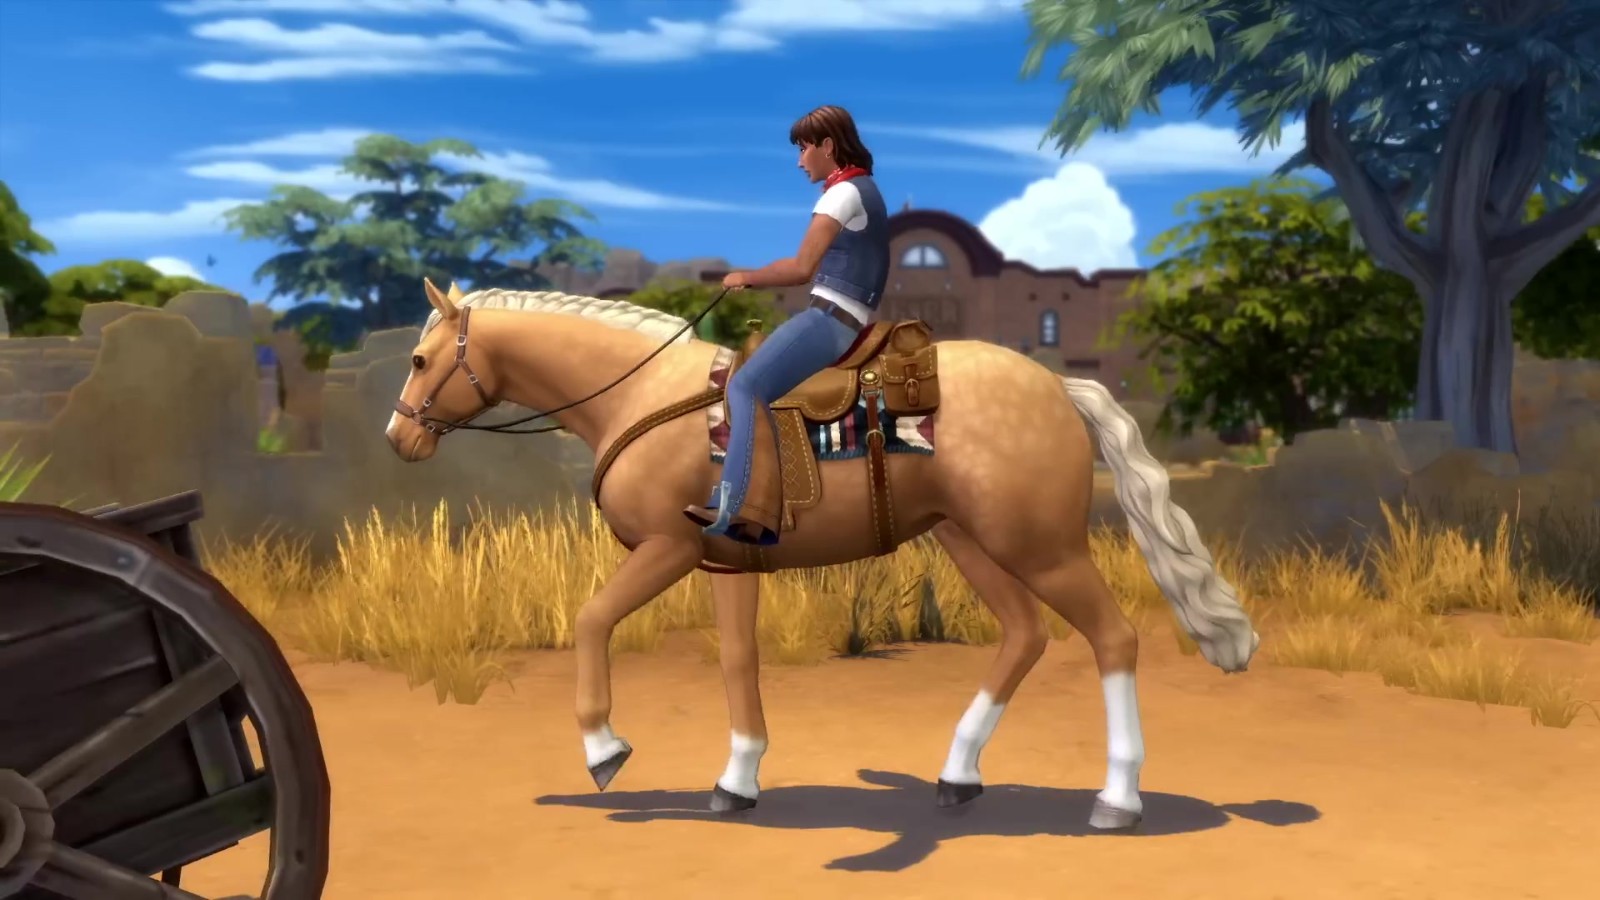 《模拟人生4》新增骏马牧场扩展包 可体验养马生活